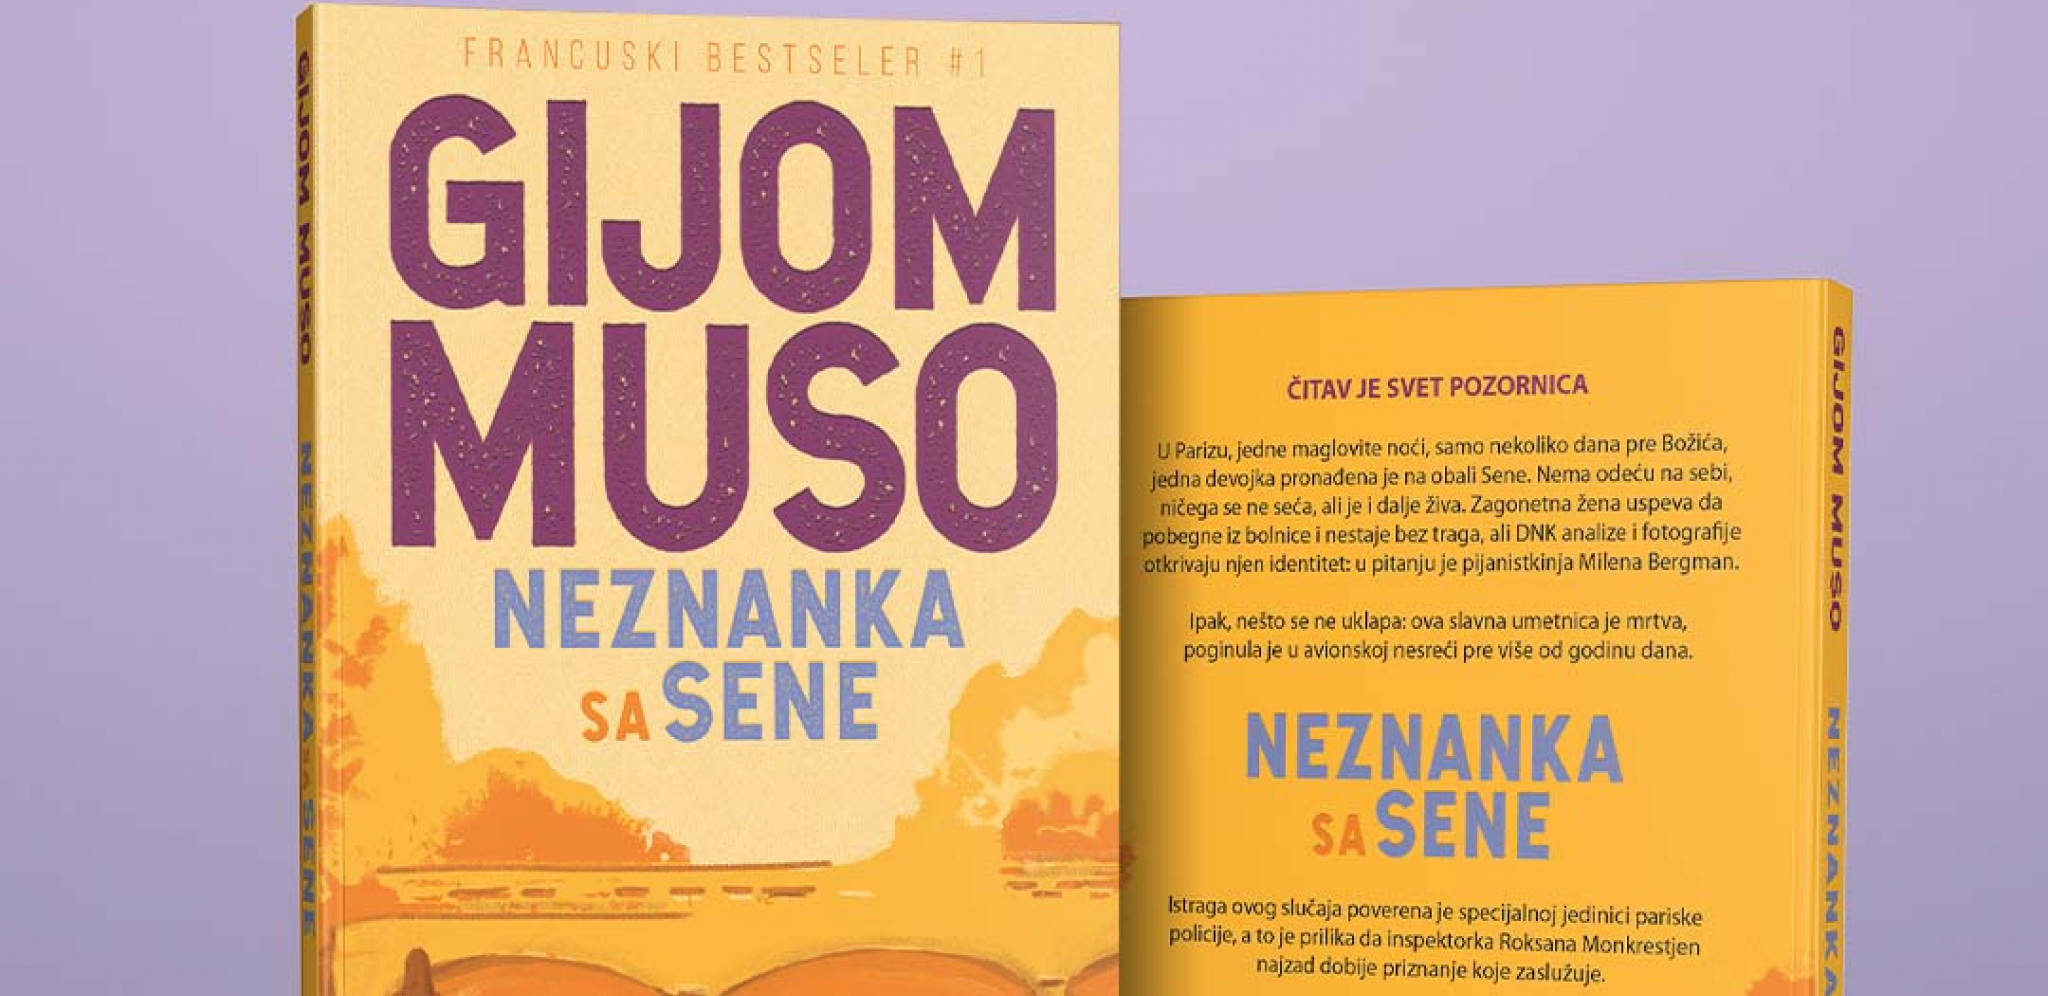 Budite prvi koji će pročitati novi roman Gijoma Musoa "Neznanka sa Sene"